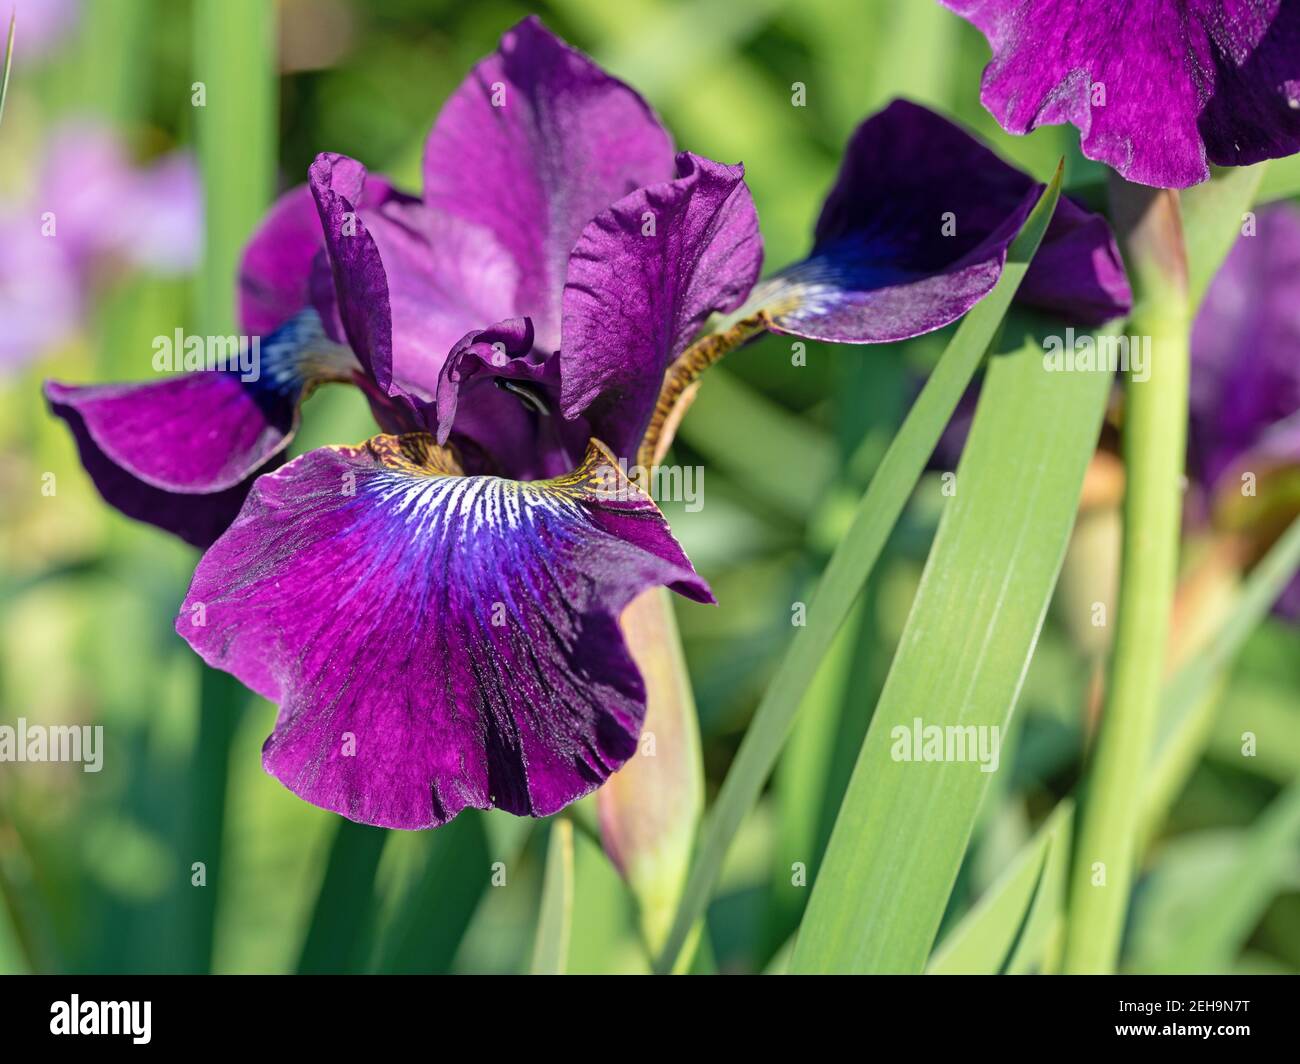 Blooming irises, iris, close-up Stock Photo